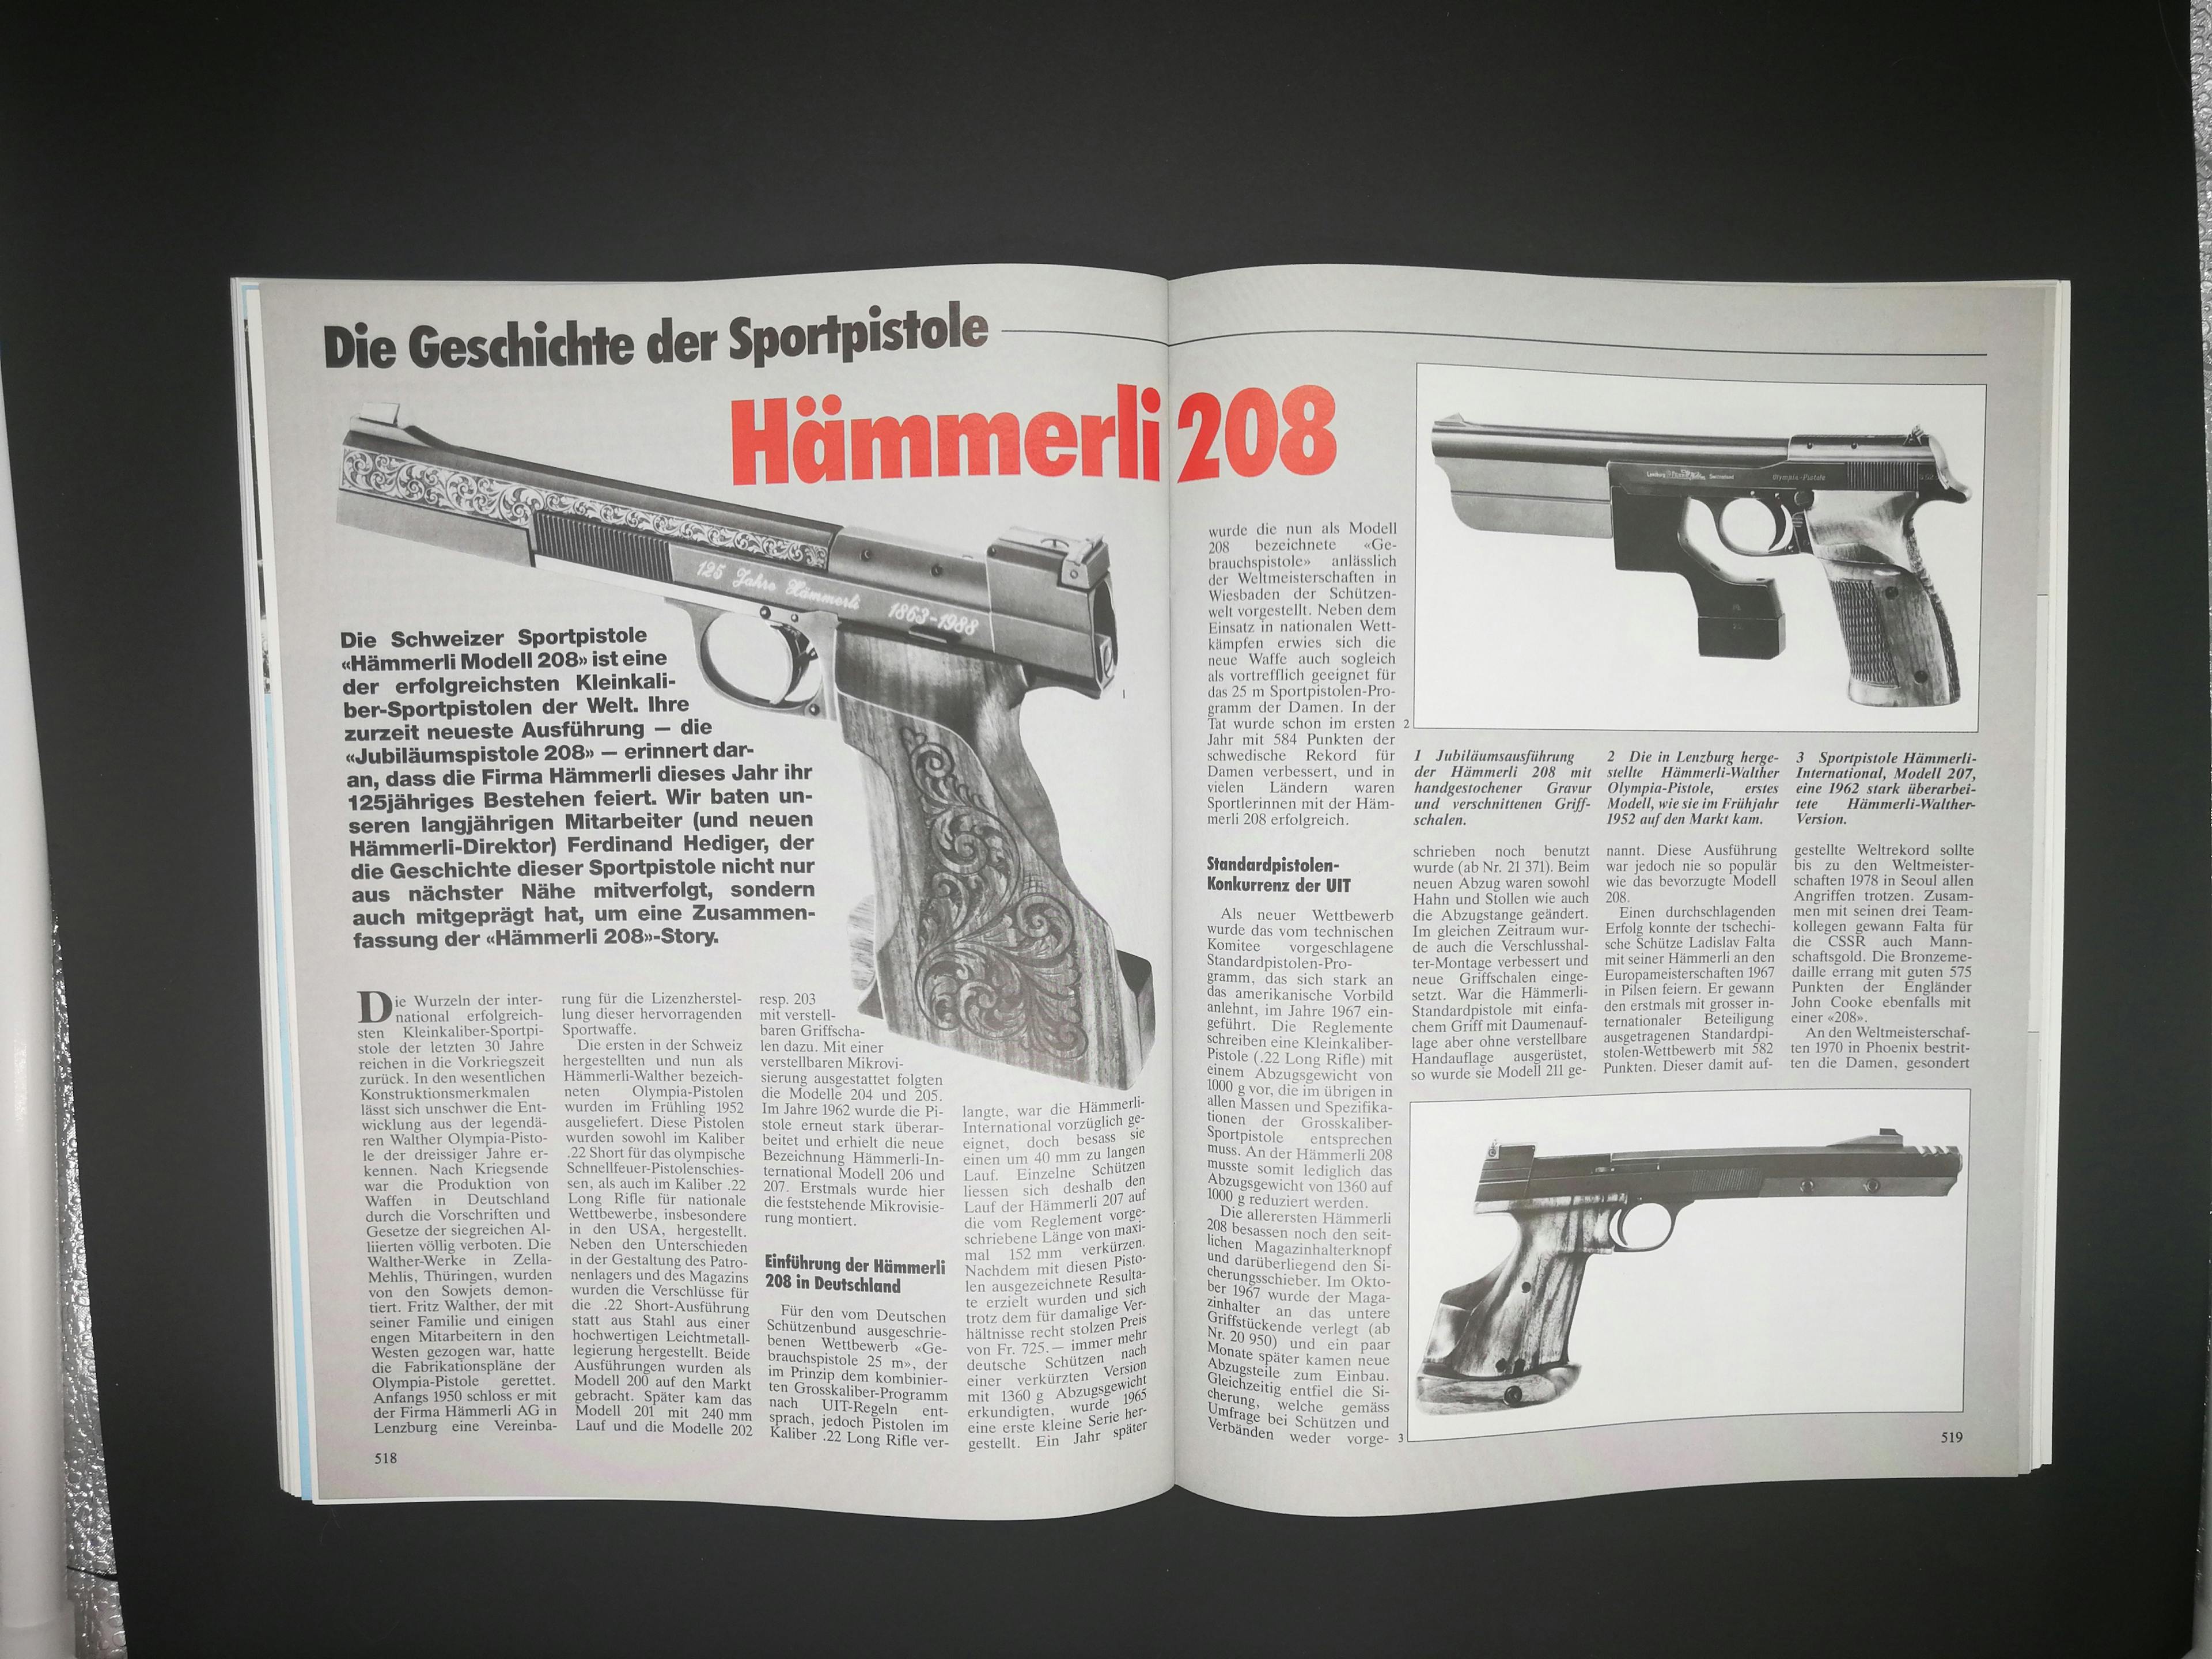 Die Hämmerli 208 ist wohl eine der berühmtesten Hämmerli-Sportpistolen. Obschon heute mehr oder minder veraltet und längst abgelöst durch andere Pistolen, ist der Wiedererkennungswert extrem hoch. Ein mehrseitiger Artikel über die Geschichte der Erfolgspistole.
